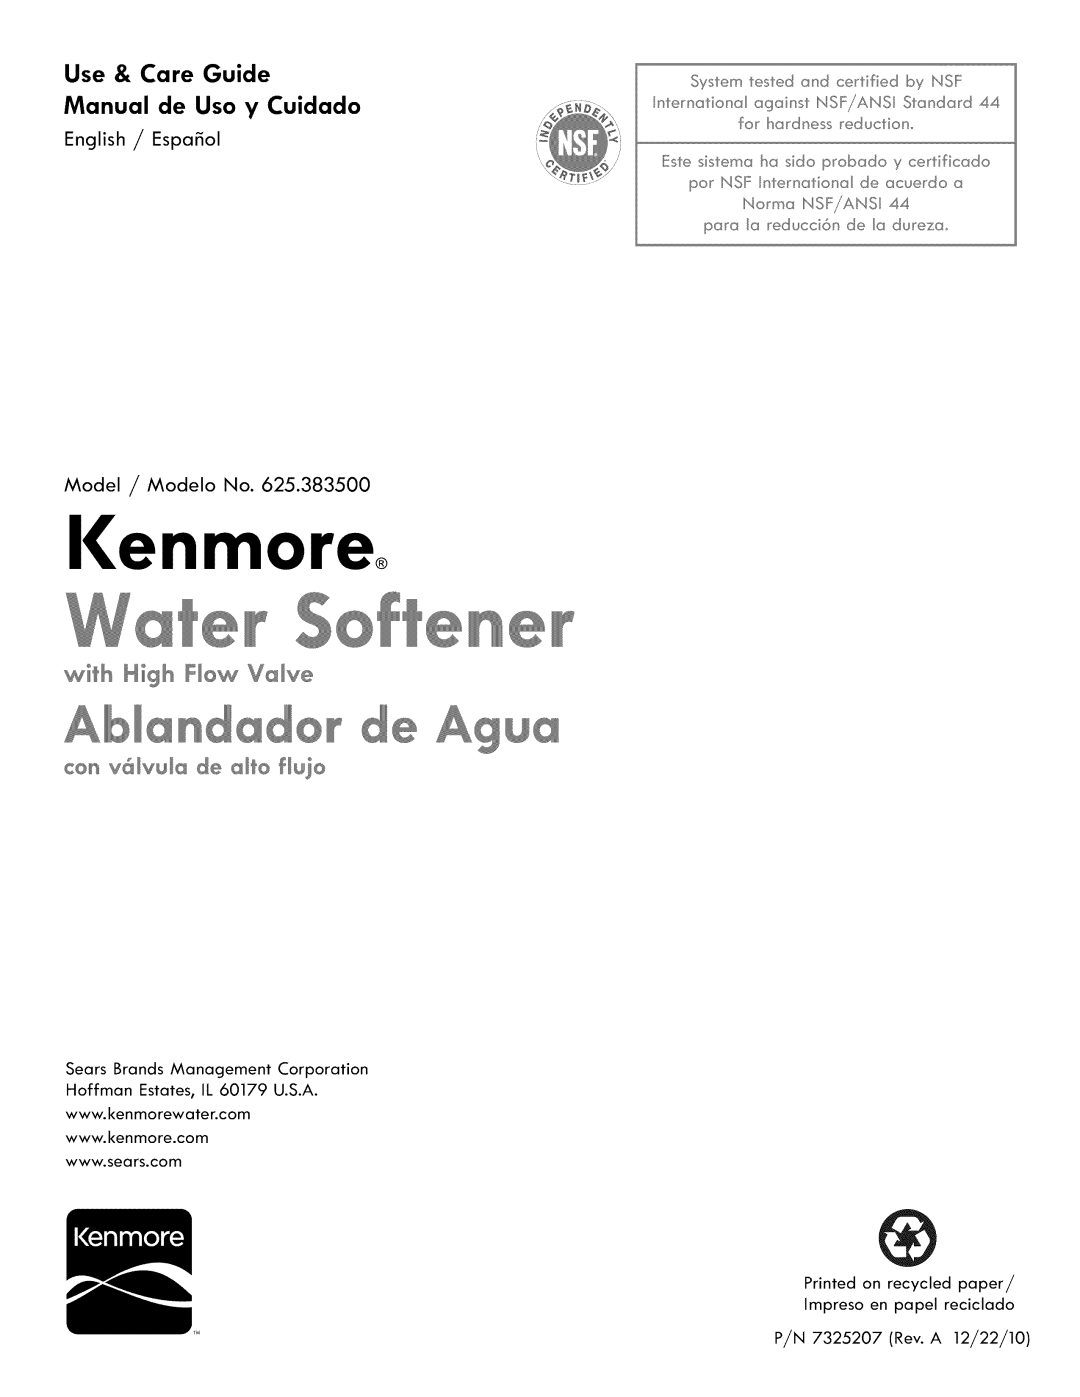 Kenmore 625.3835 manual Ienmore, Agua, Use & Care, Guide, Manual de, Uso y Cuidado, Model ,/Modelo No 